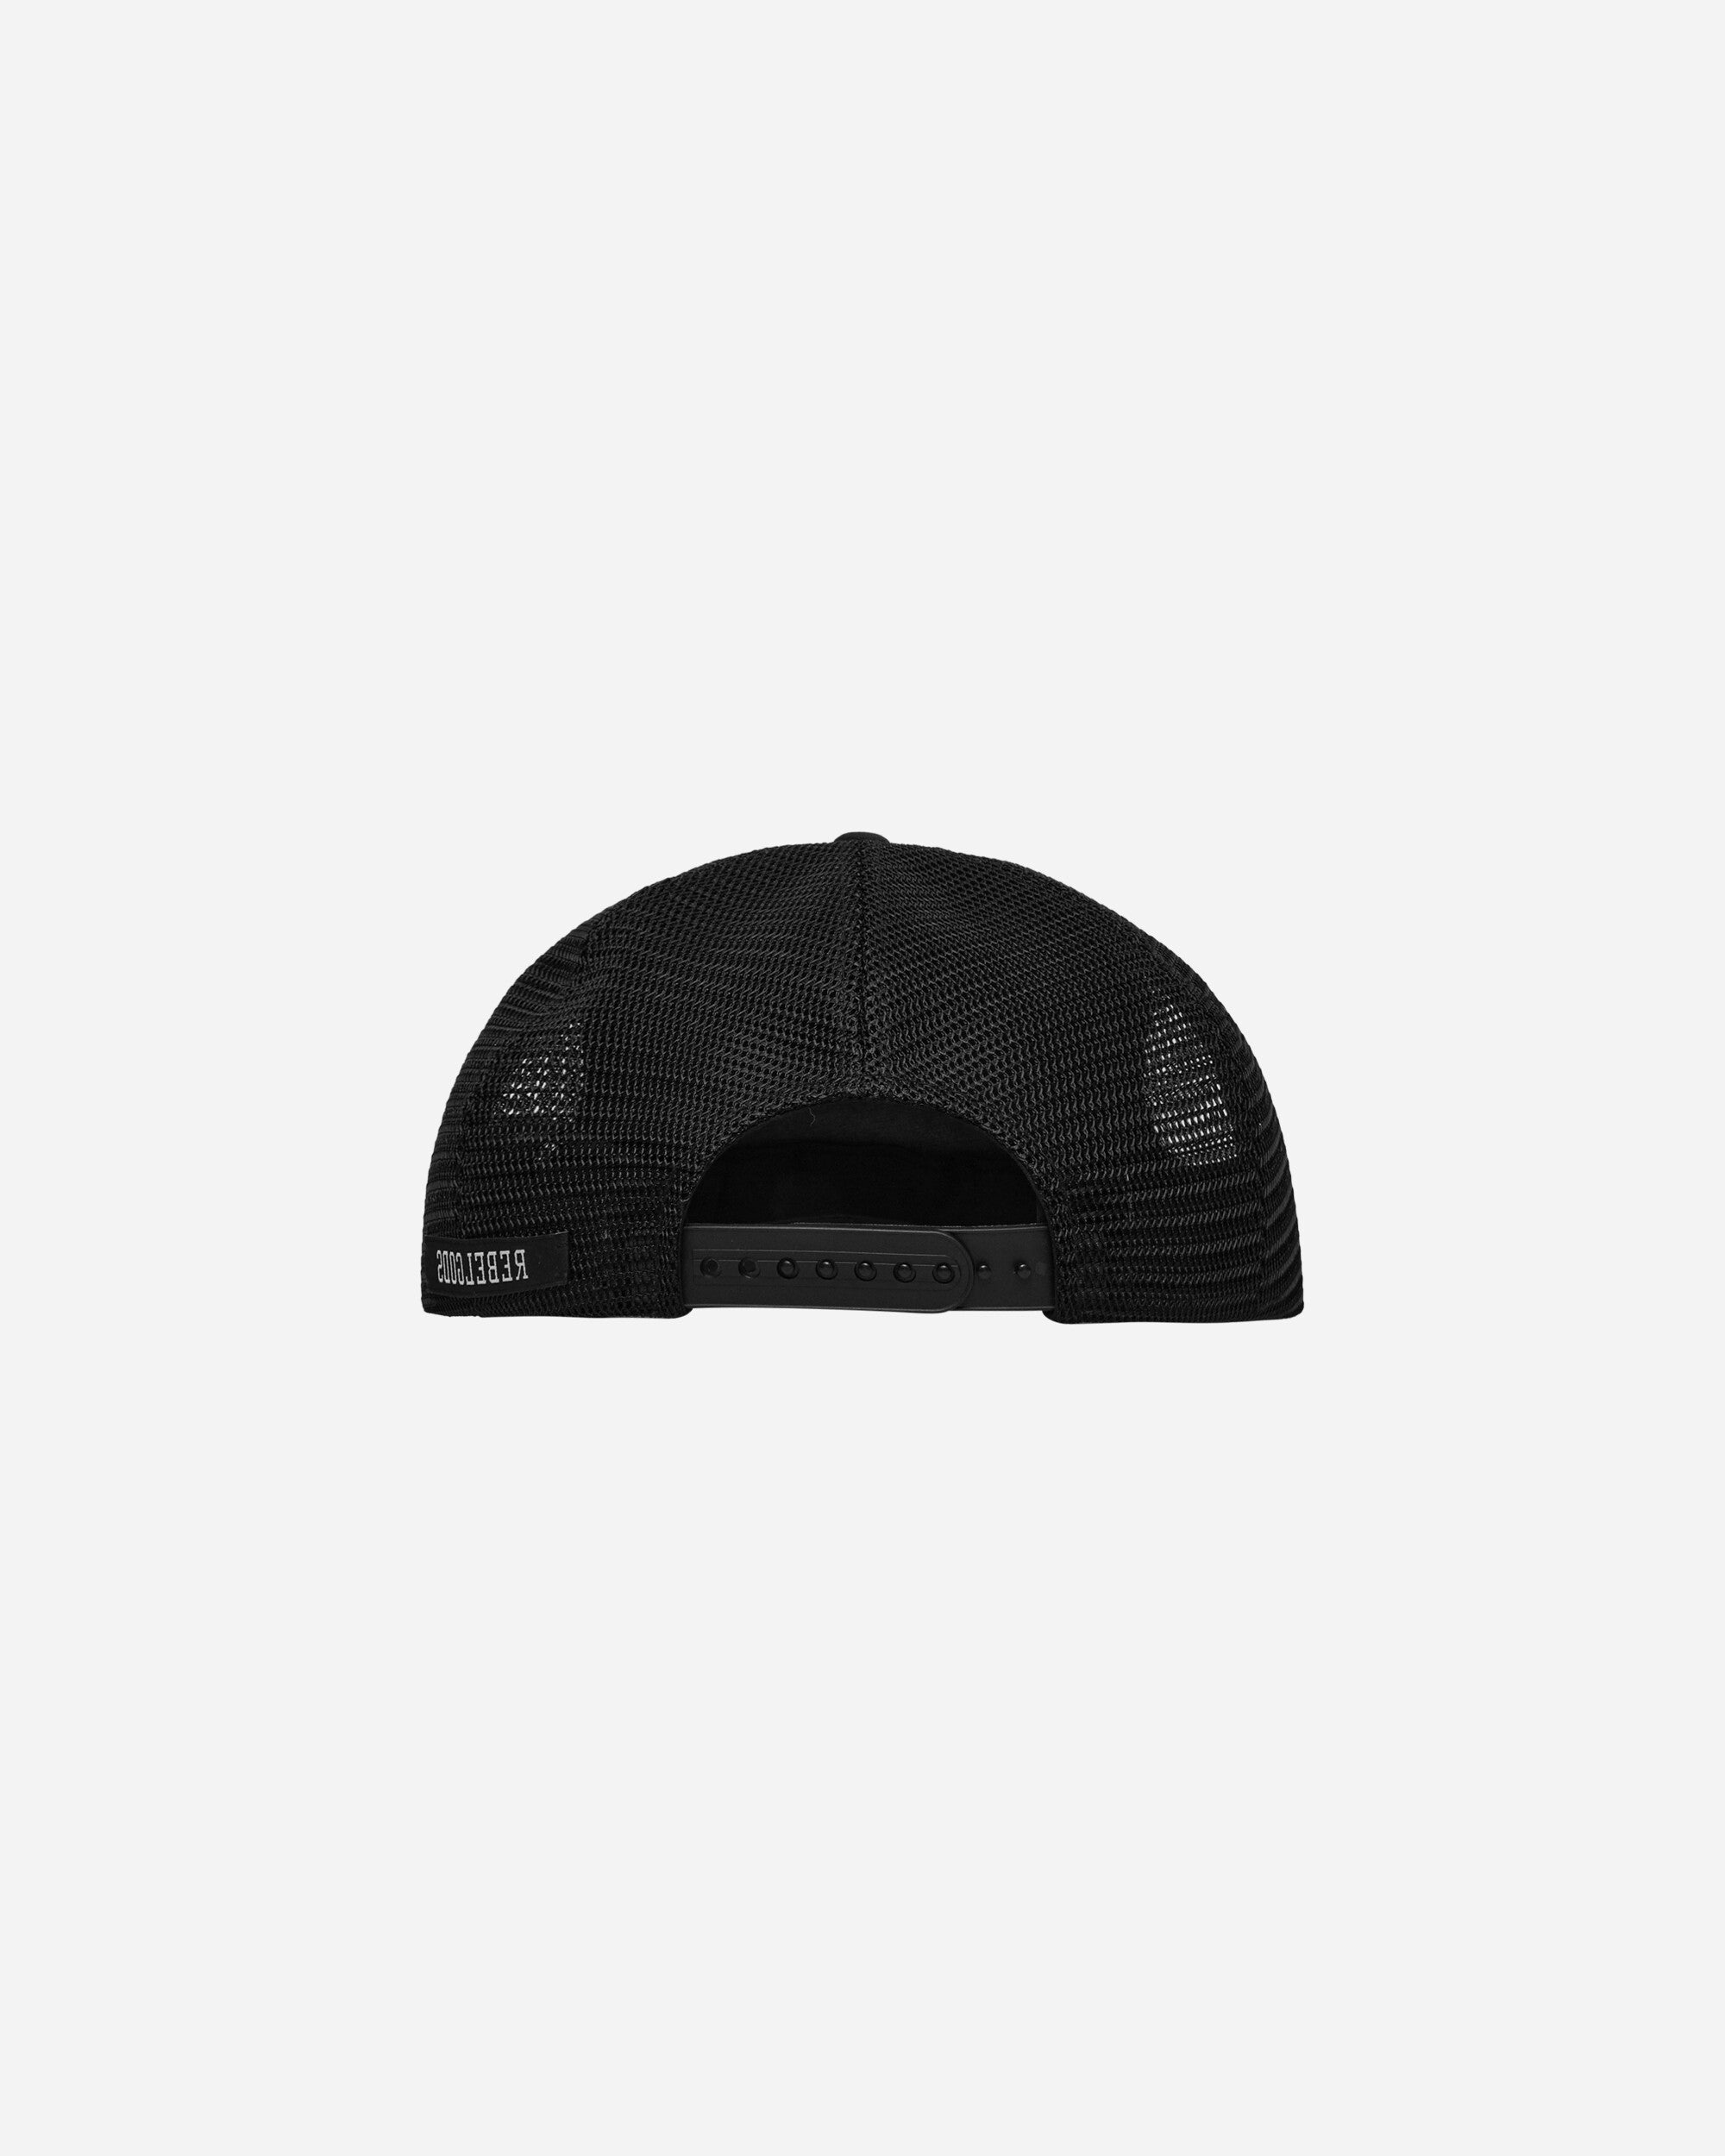 Undercover Cap Black Hats Caps UC1D4H04-2 1